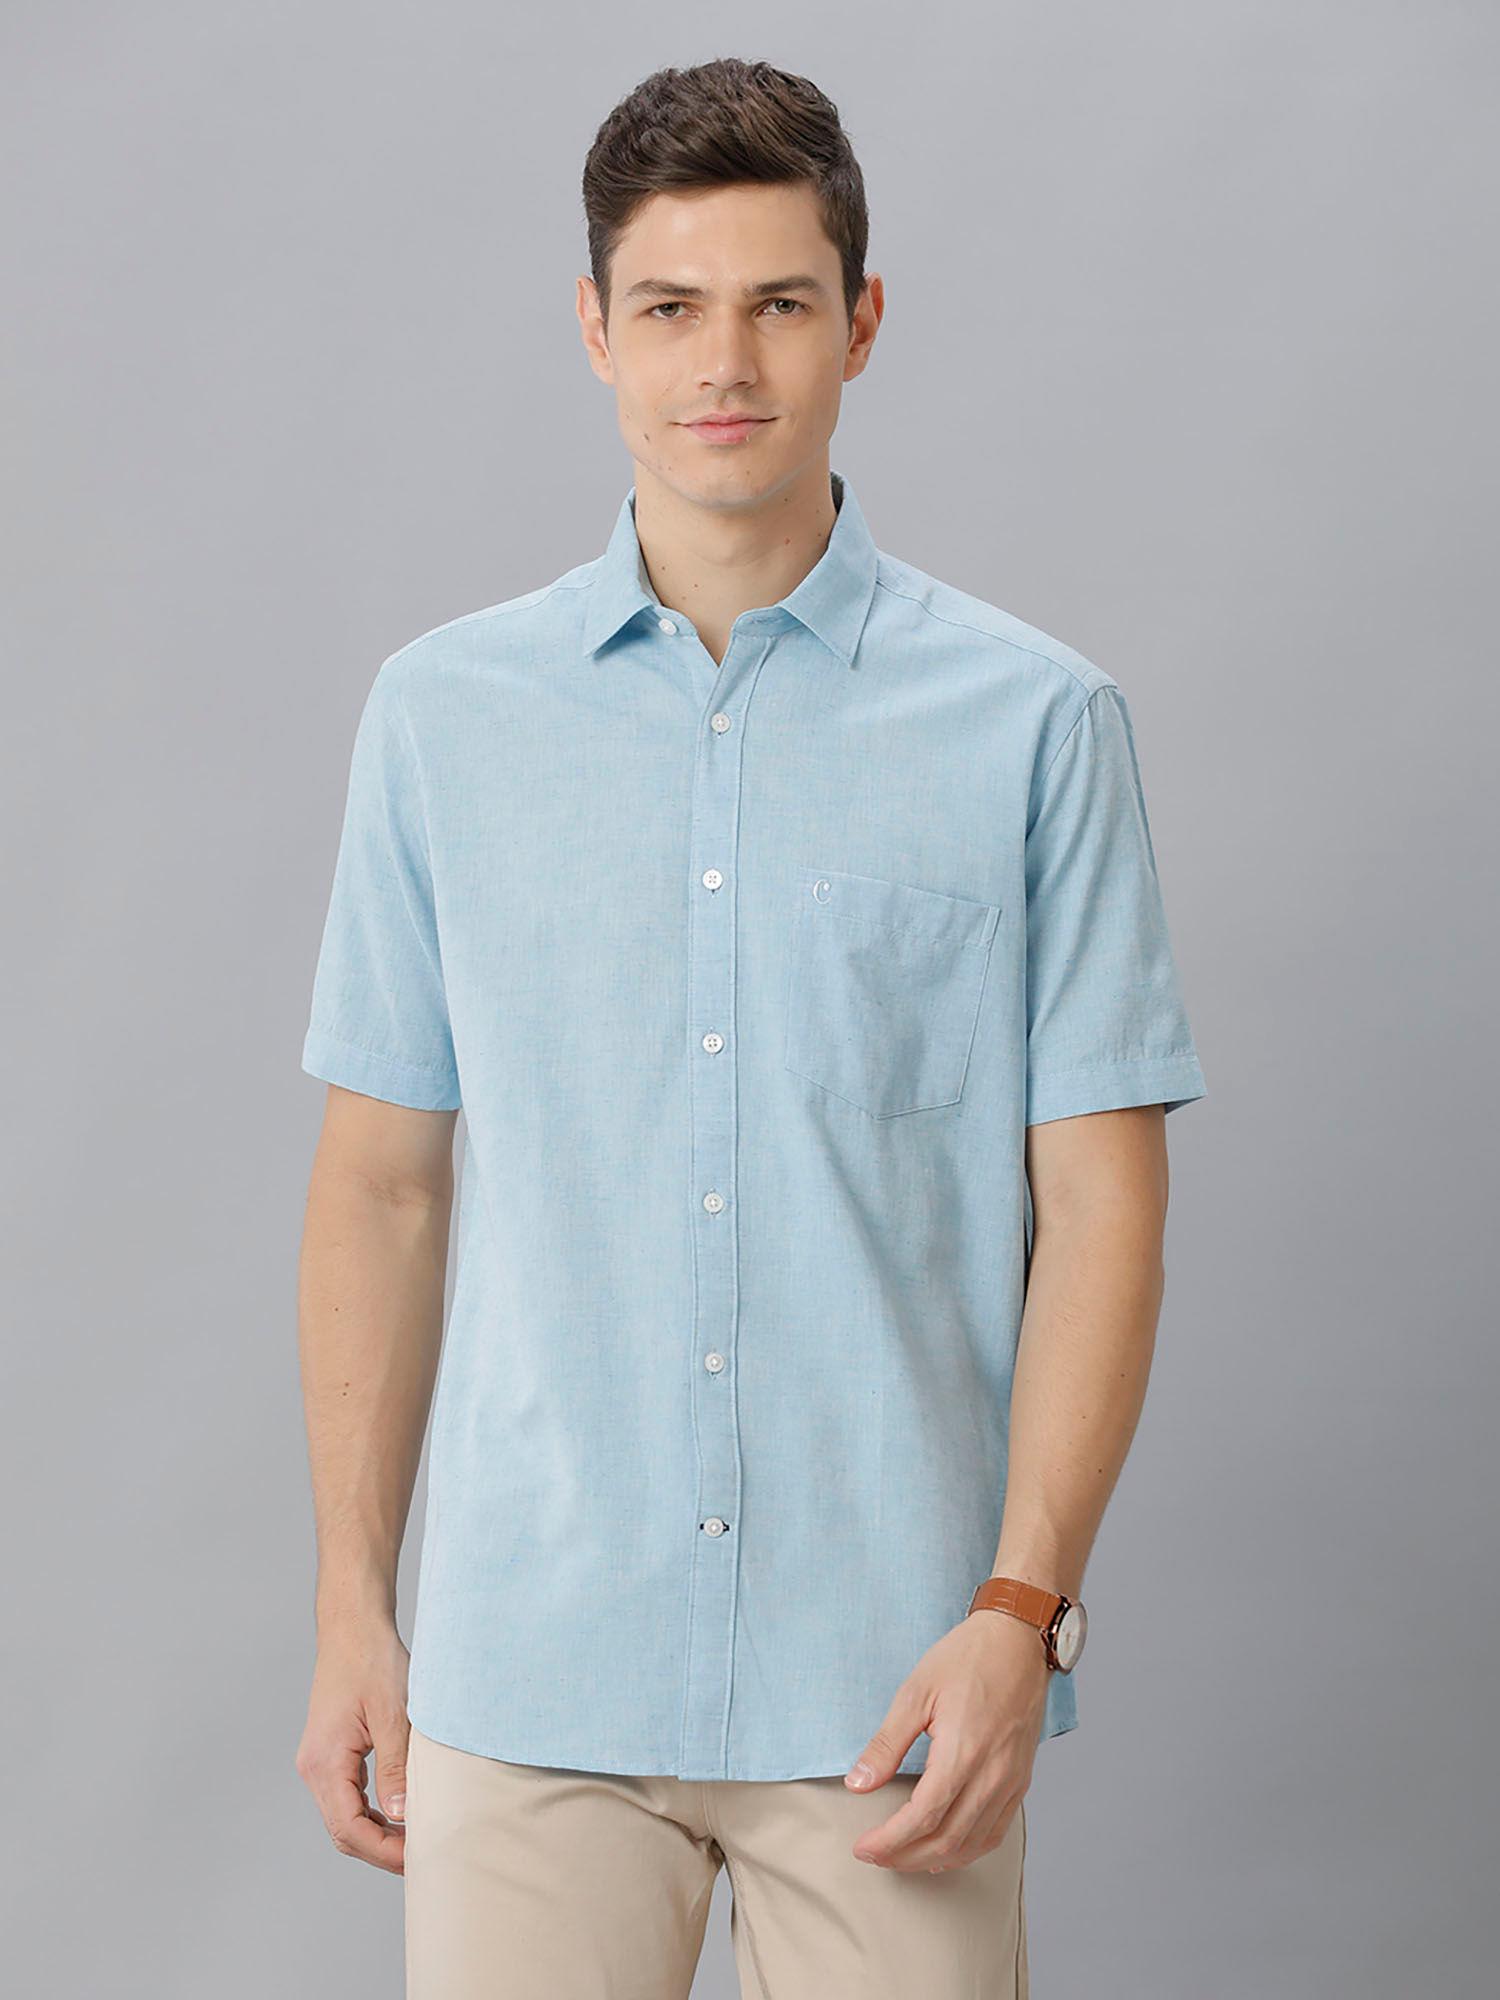 mens blue solid regular fit cotton linen shirt